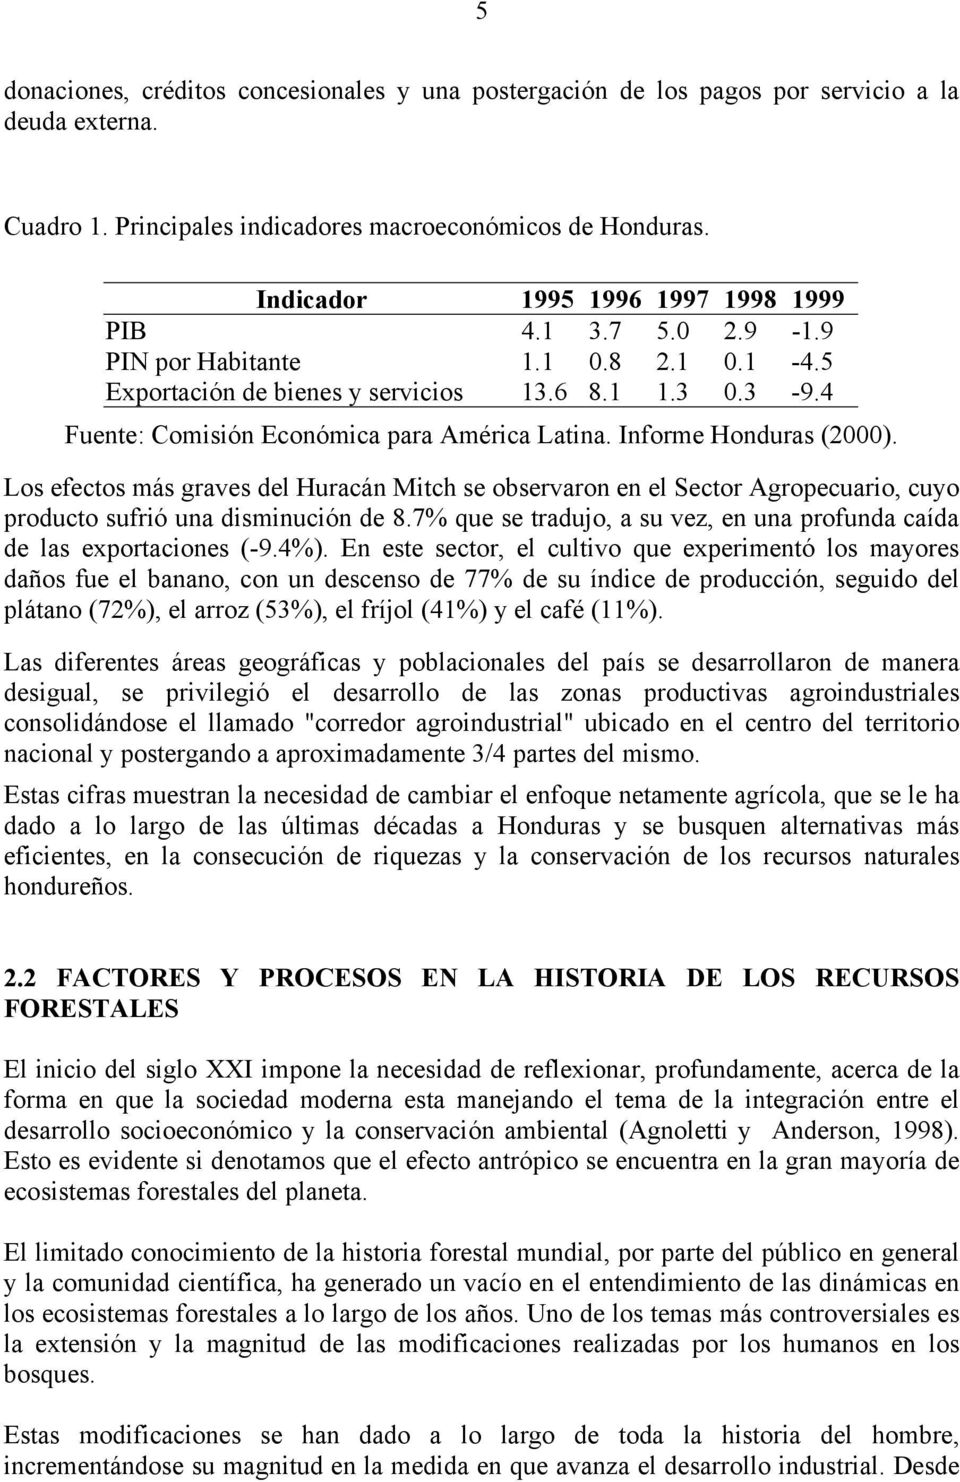 4 Fuente: Comisión Económica para América Latina. Informe Honduras (2000). Los efectos más graves del Huracán Mitch se observaron en el Sector Agropecuario, cuyo producto sufrió una disminución de 8.